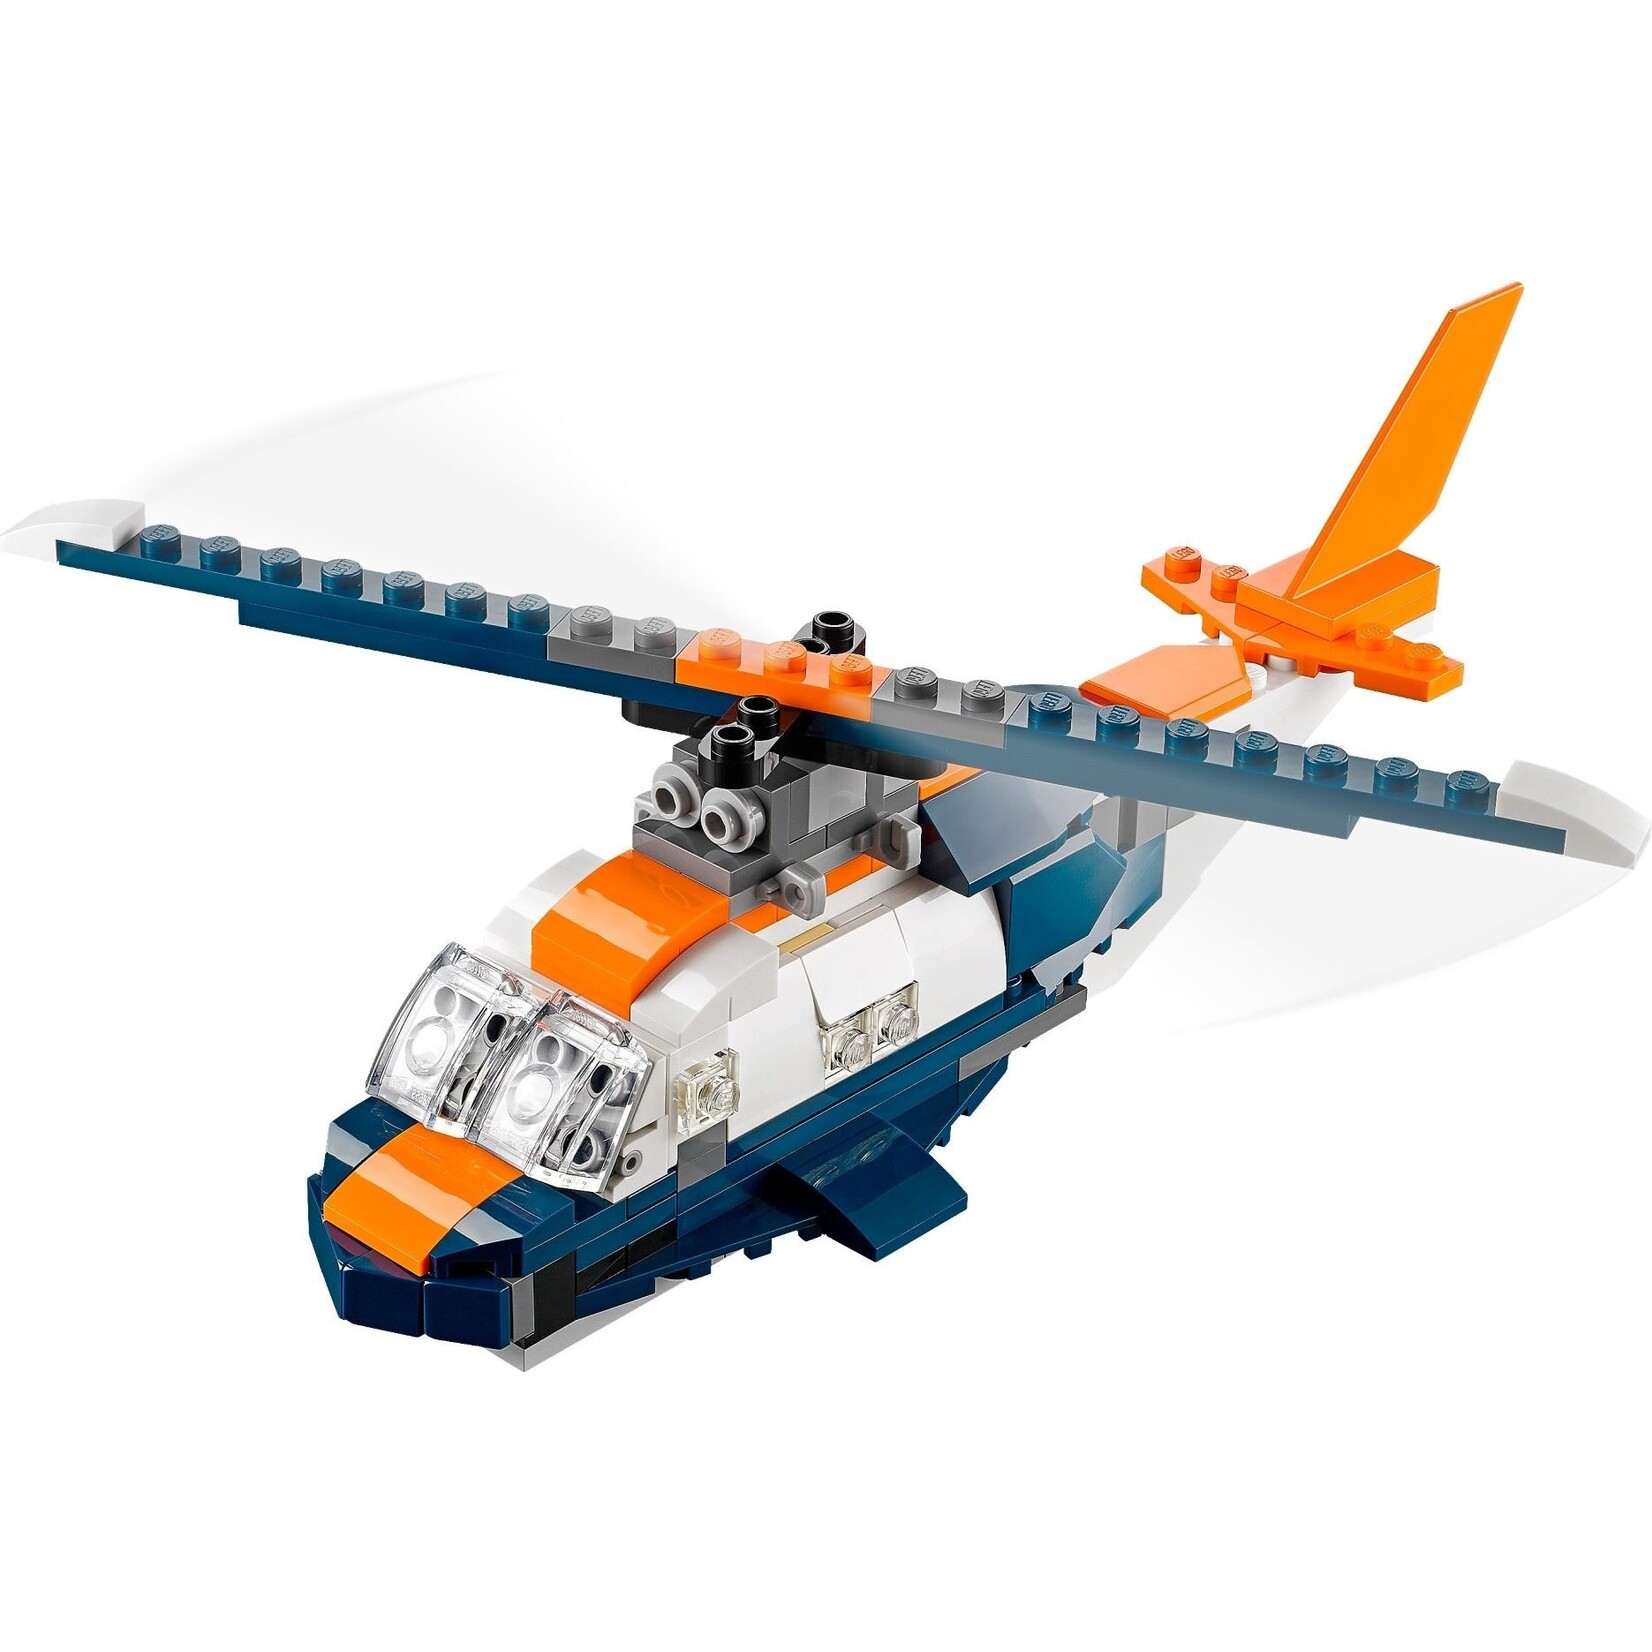 LEGO Supersonische straaljager - 31126